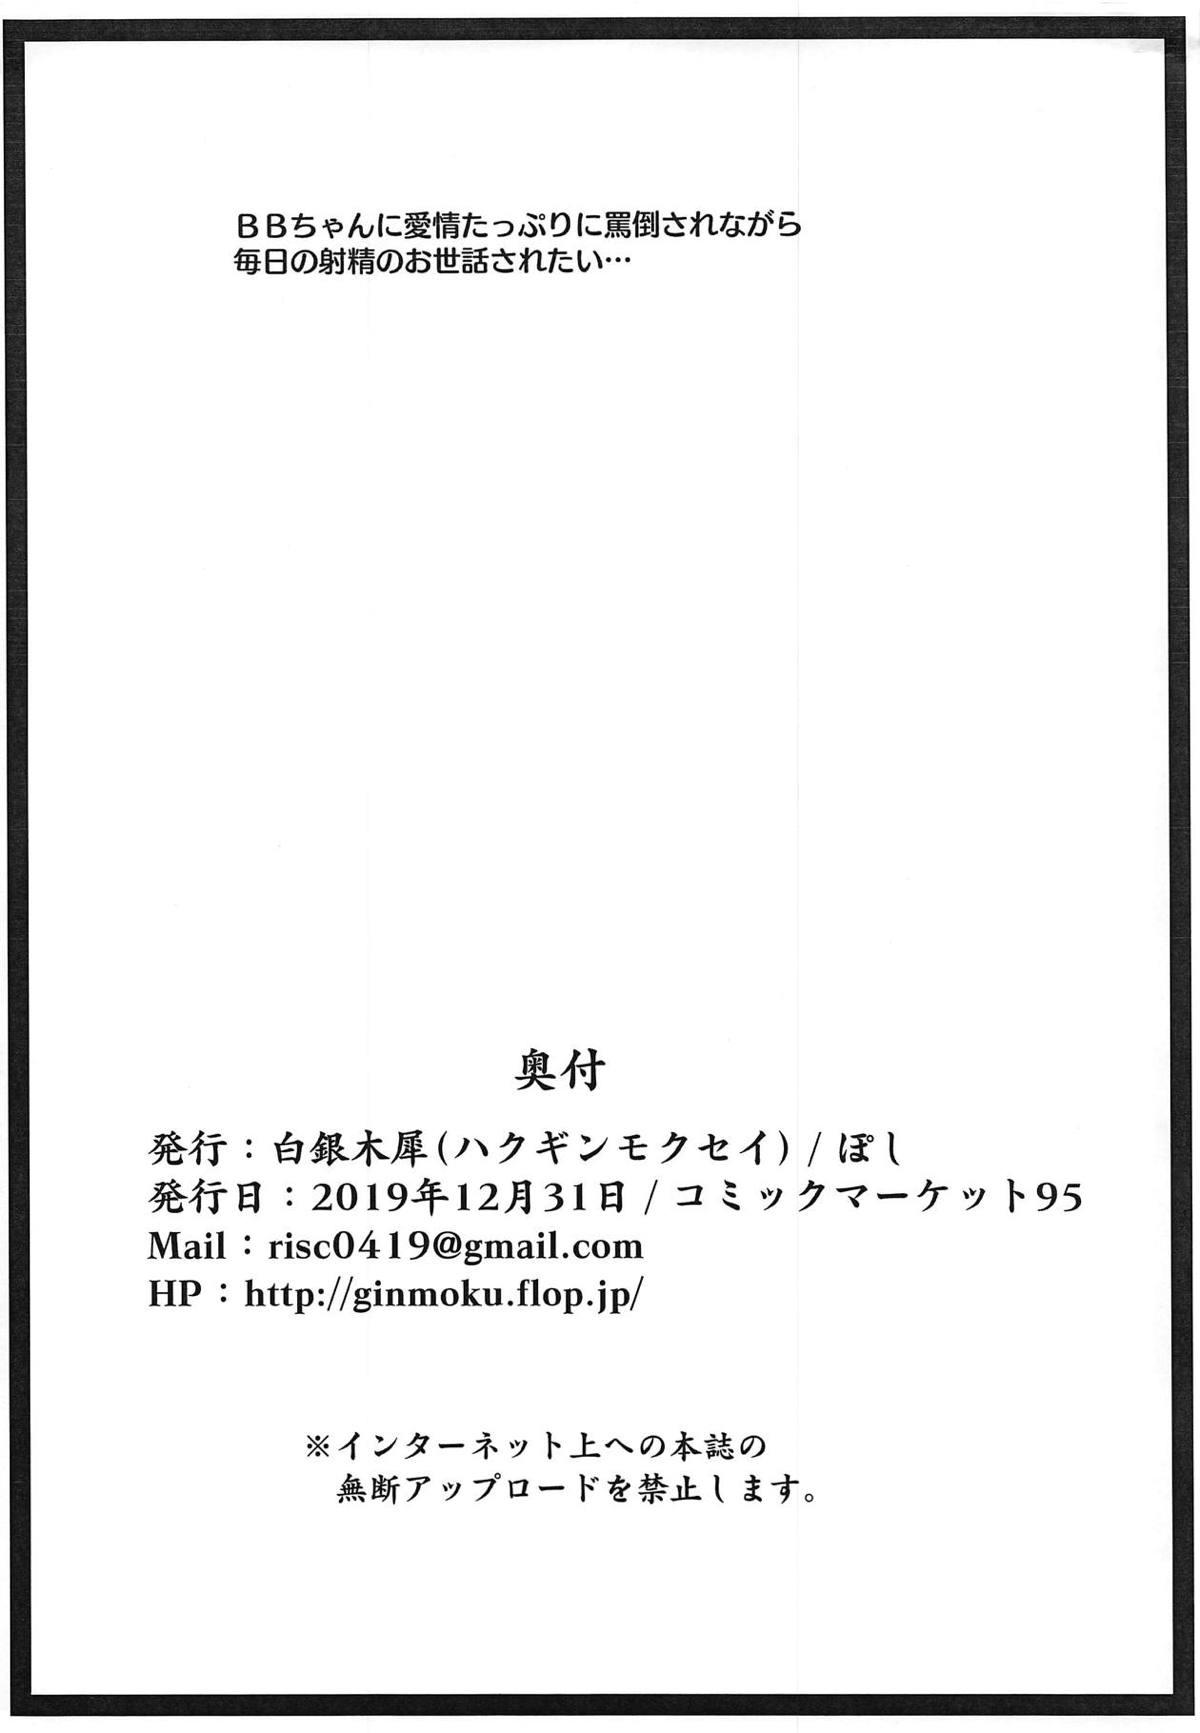 Exhibition Ero Rakugaki Bon @ C95 - Fate grand order Curious - Page 8